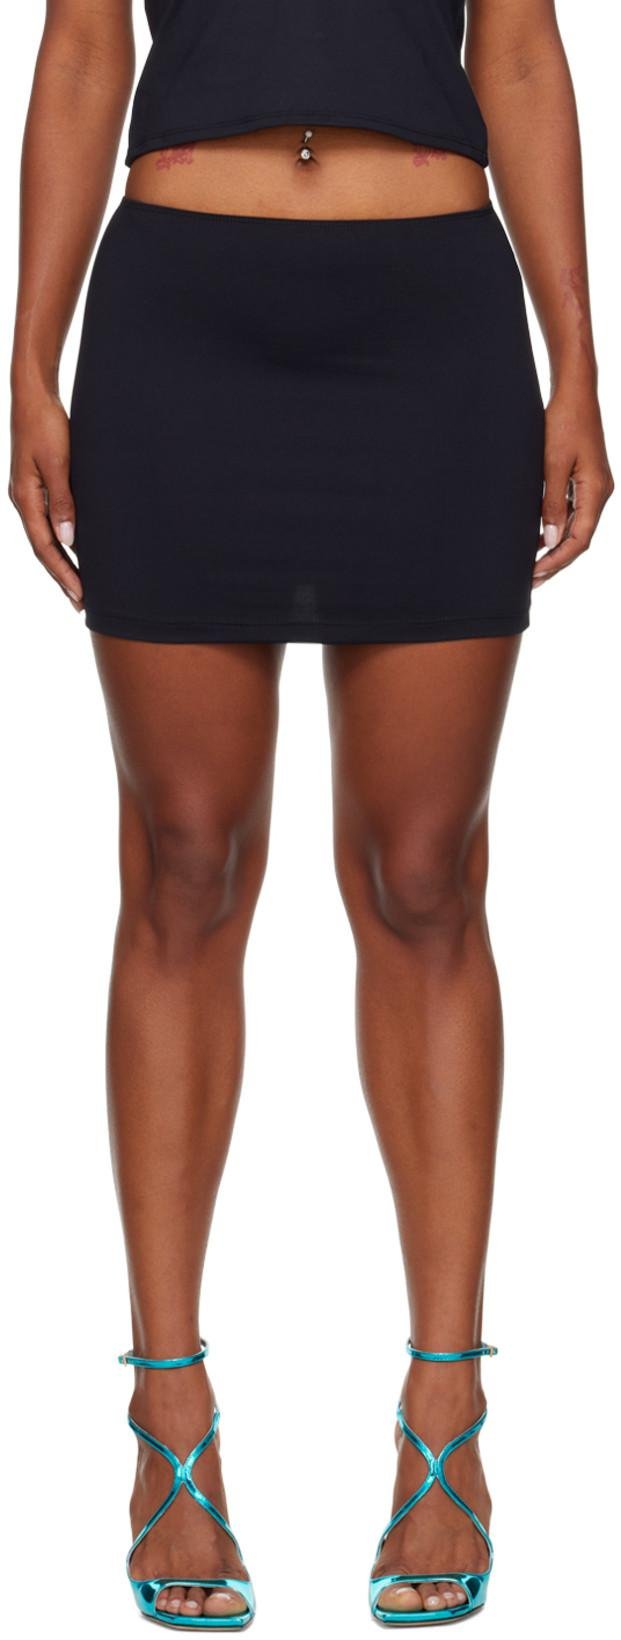 SSENSE Exclusive Black Delta Swim Skirt by BINYA